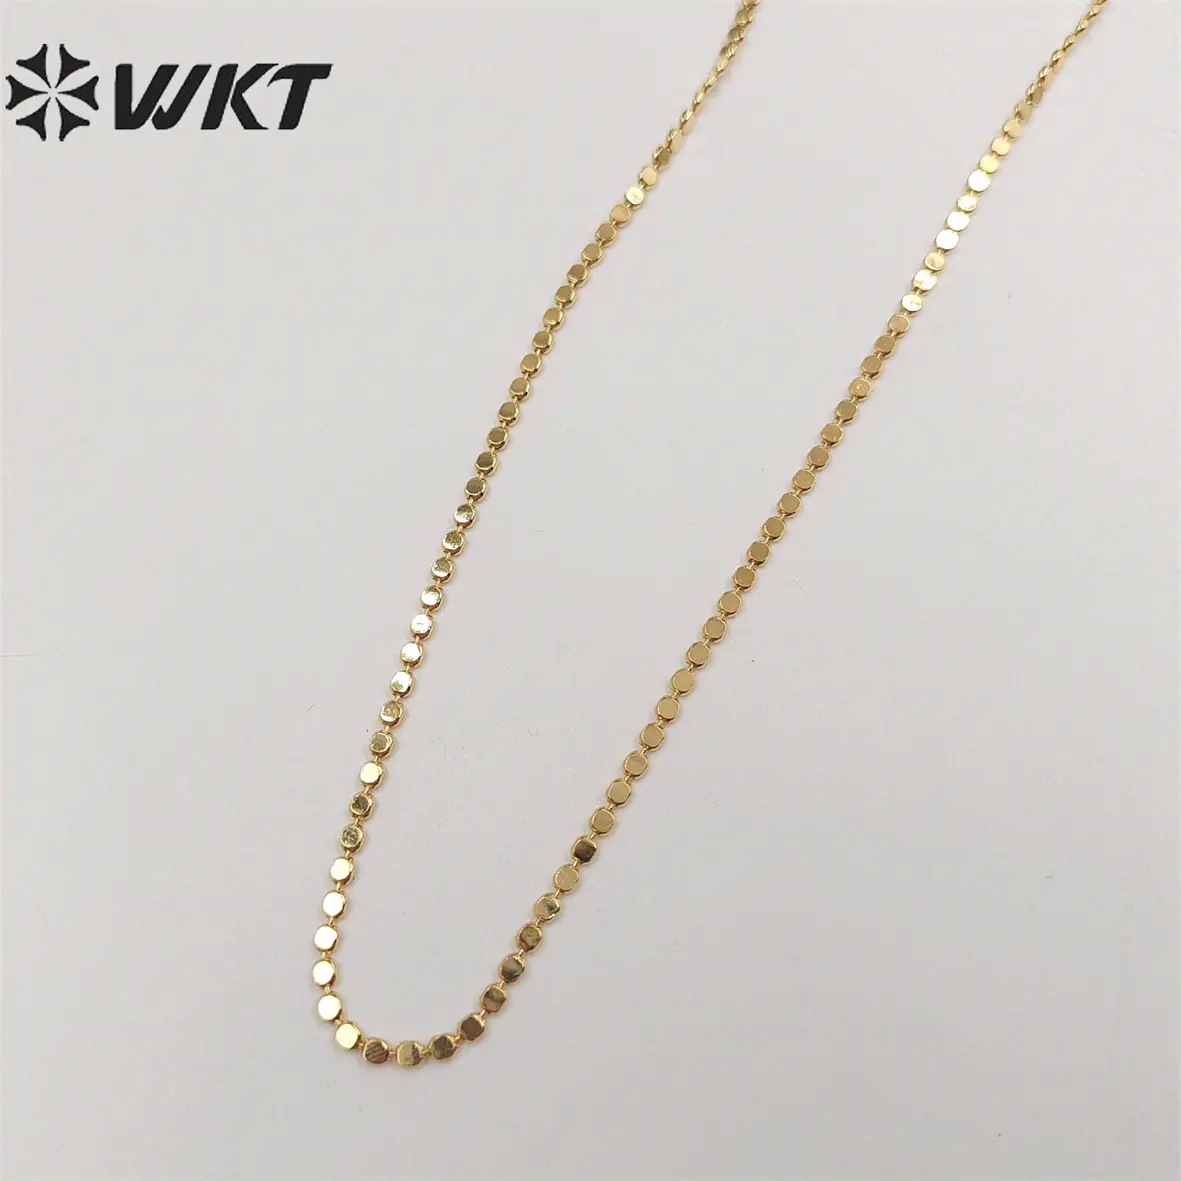 Cadena de latón hecha a mano de WT-BFN058, cadena de joyería de oro auténtico de 18k, cuentas de tarnishale resistentes, collar de cadena de metal